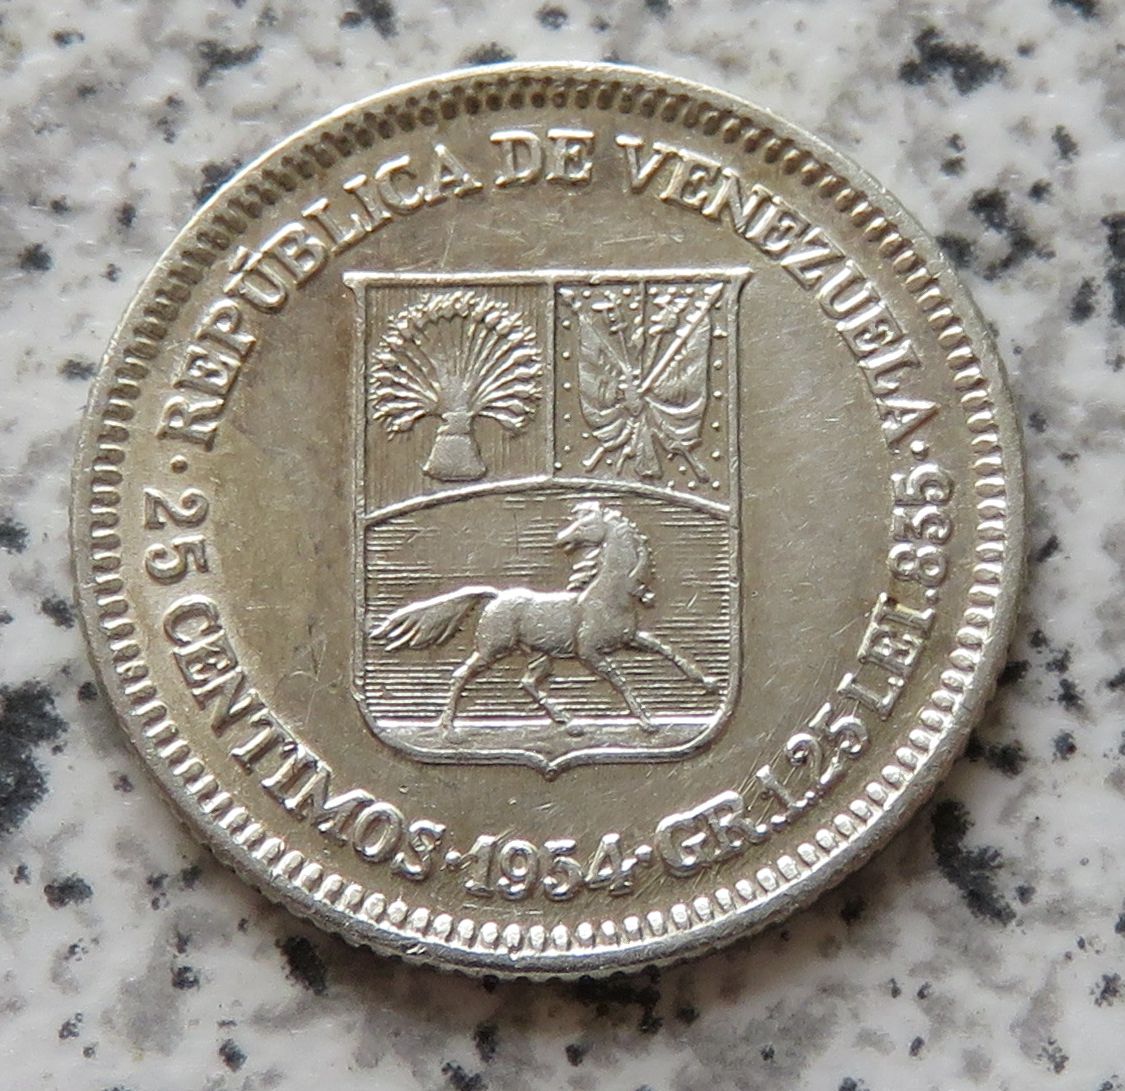  Venezuela 25 Centimos 1954   